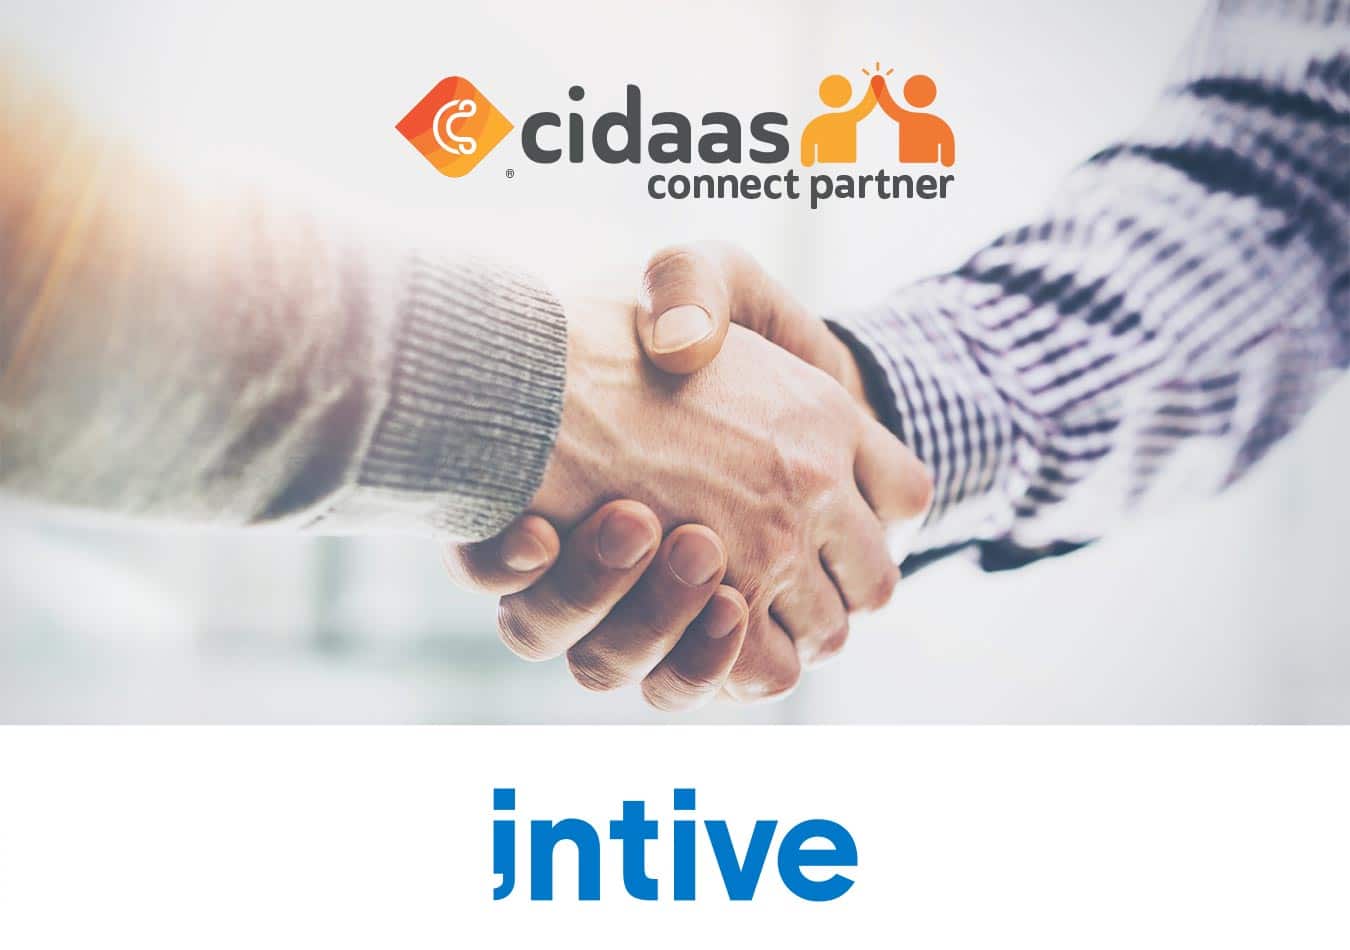 cidaas und intive bündeln Ihre Expertise im Identity Management für fortschrittliche digitale Lösungen